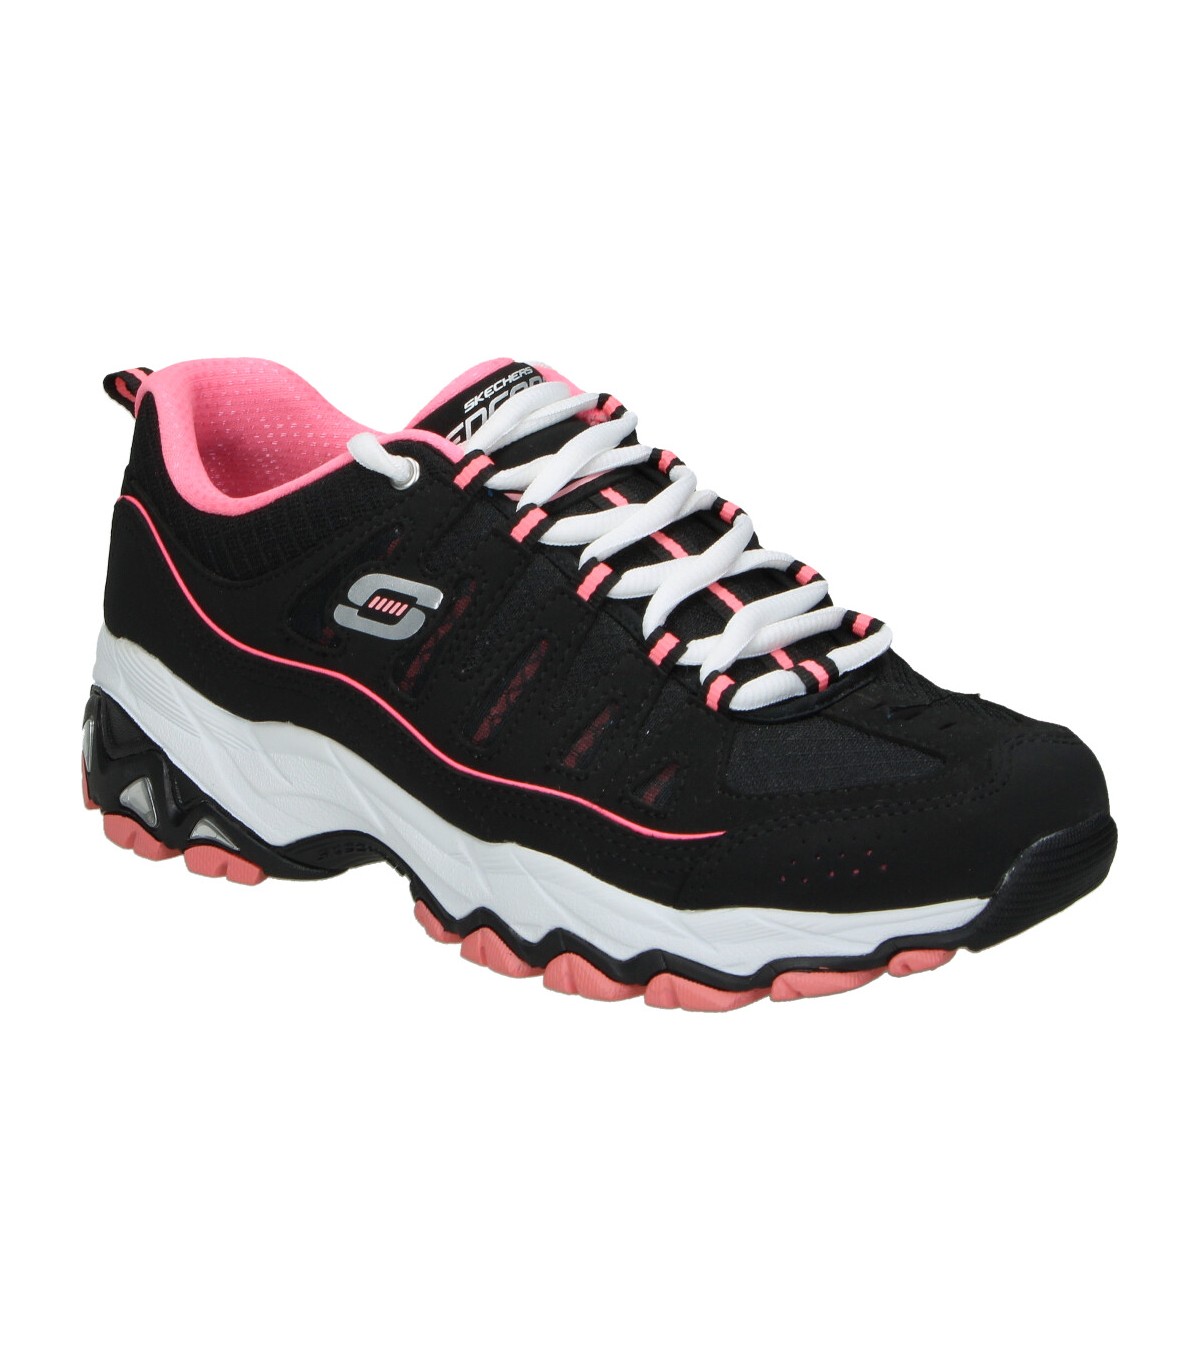 Zapatillas con detalles rosas para mujer Skechers. Envío 24-72h.